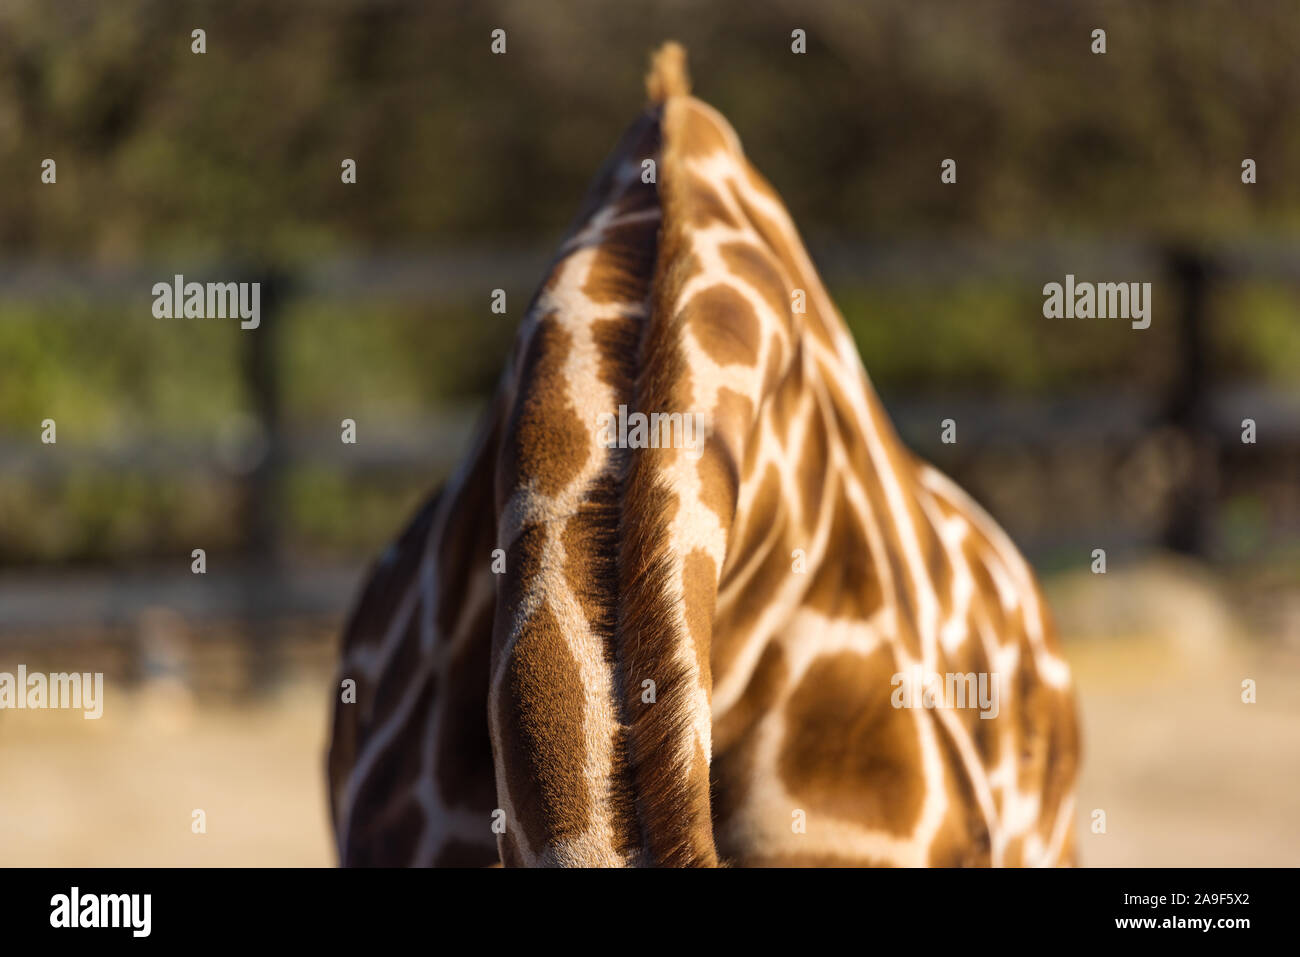 Cerca de la piel de la jirafa con manchas y melena. La fauna africana Foto de stock